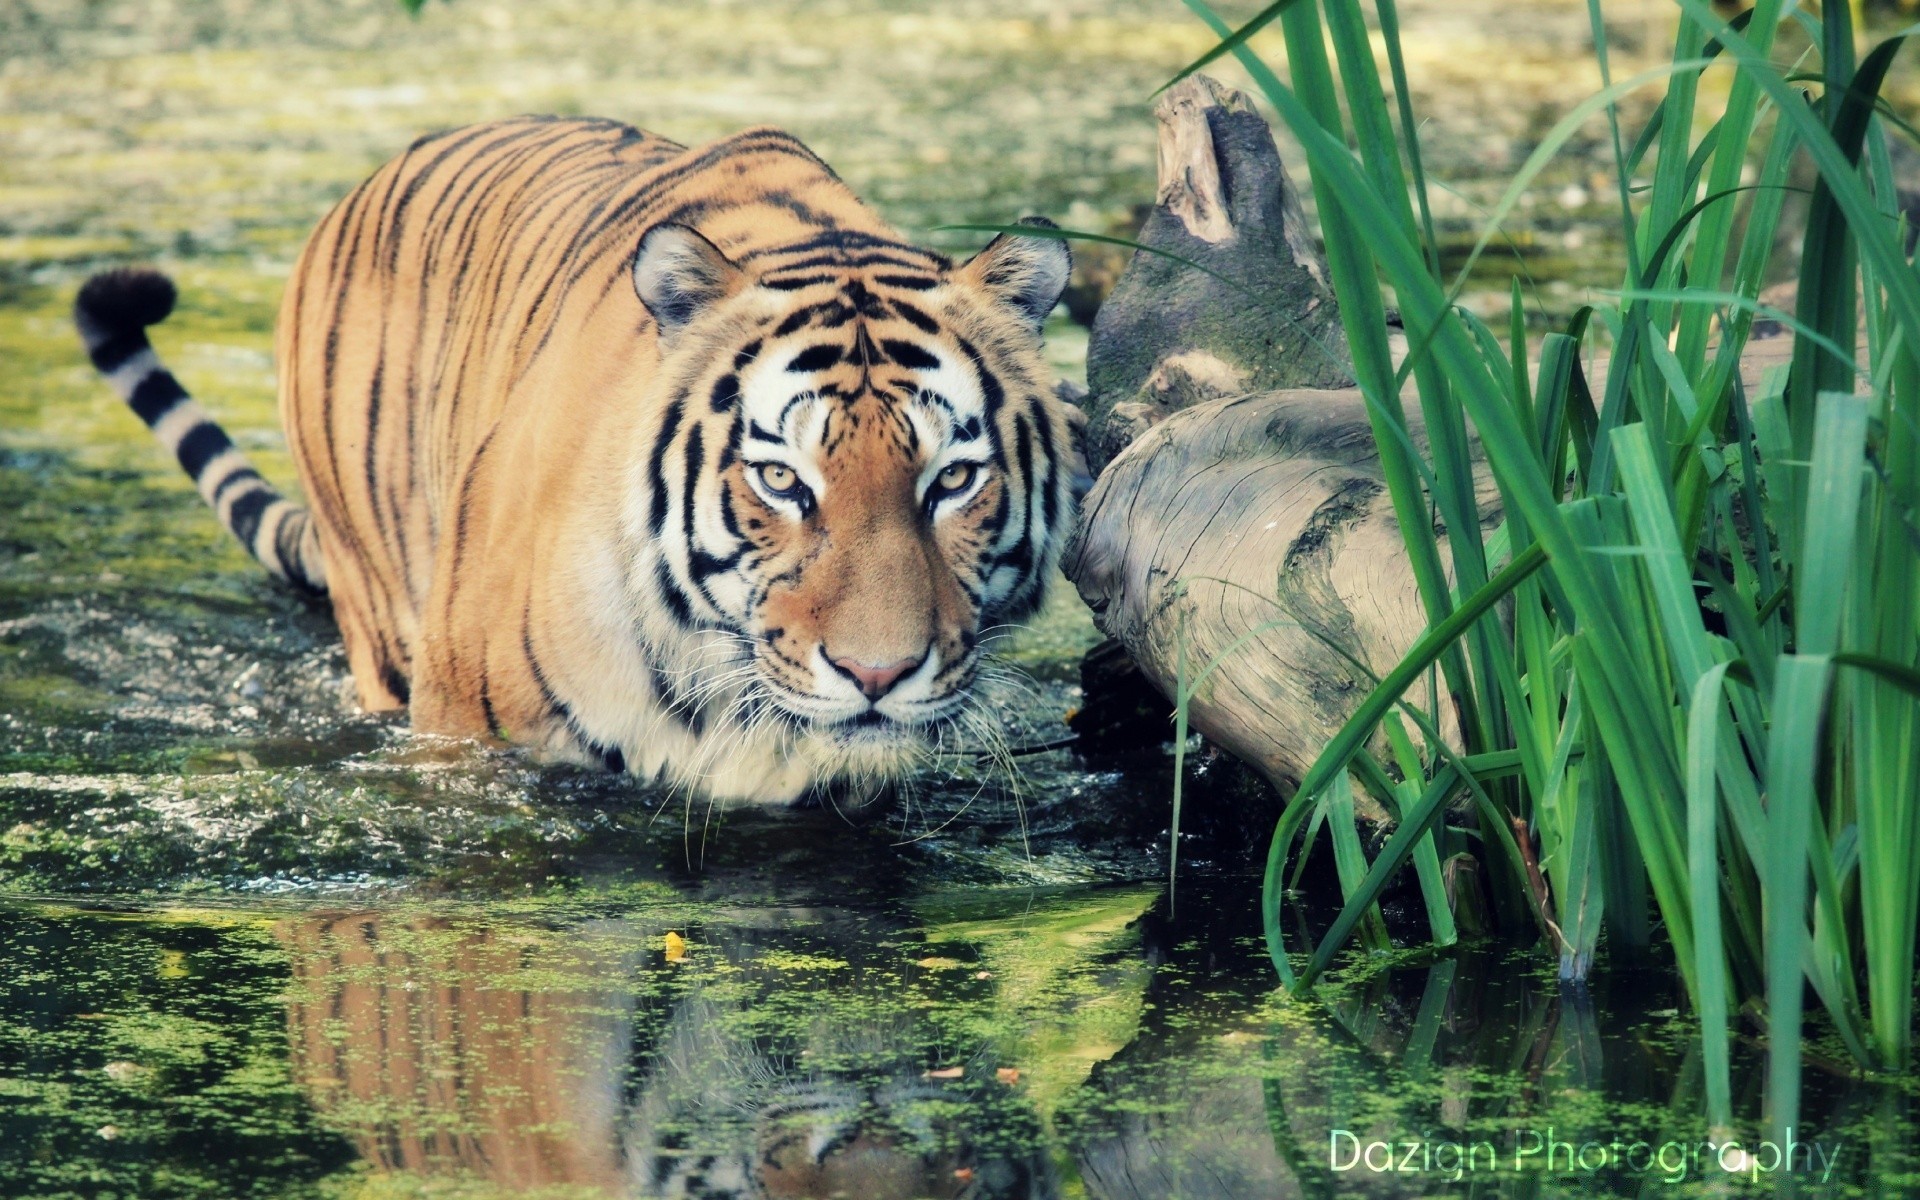 животные дикой природы животное млекопитающее природа дикий тигр кошка джунгли сафари большой зоопарк трава опасность хищник охотник